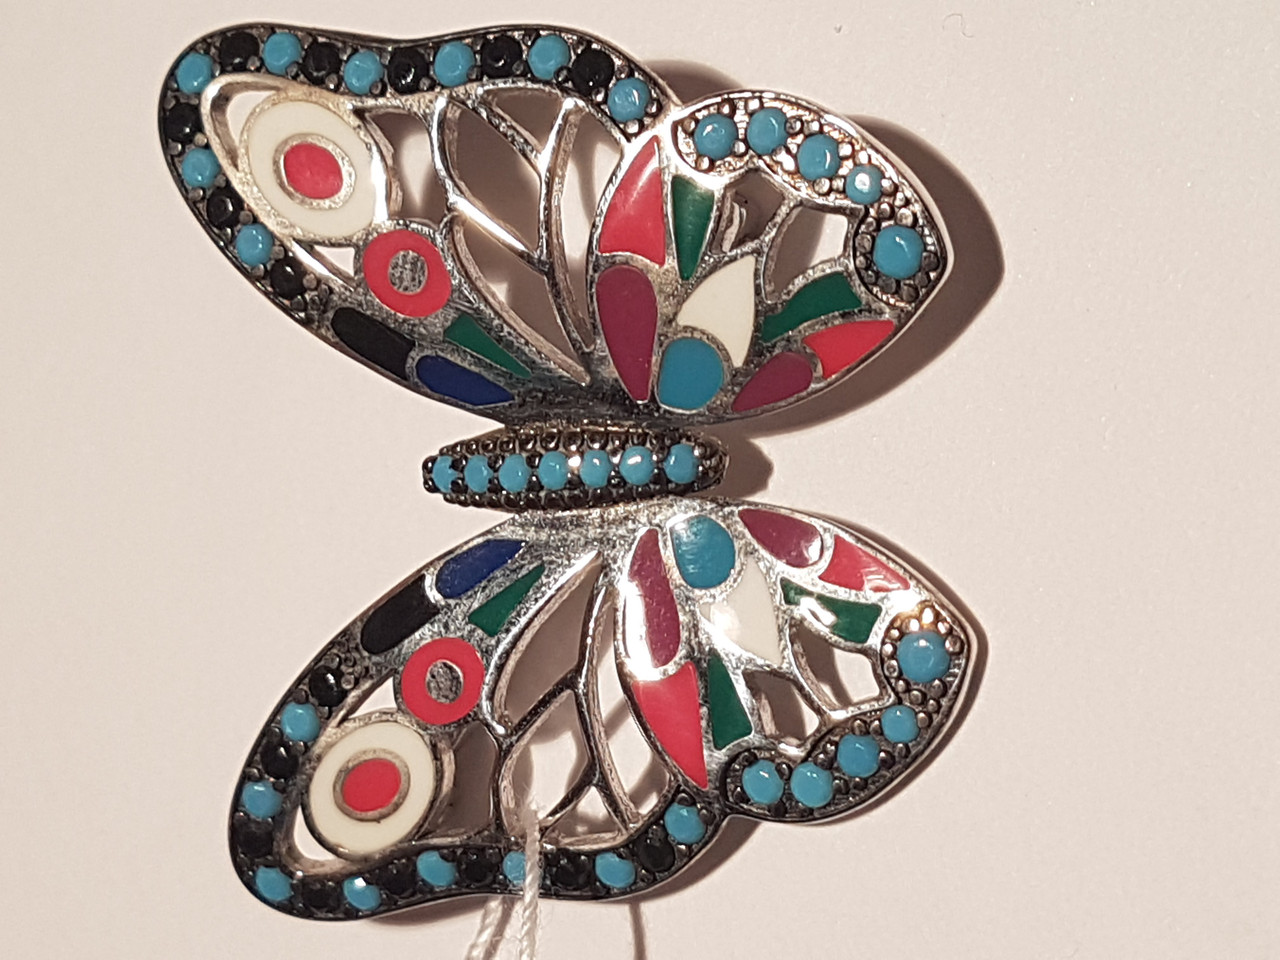 Срібна брошка Метелик з емаллю. Артикул 660105а